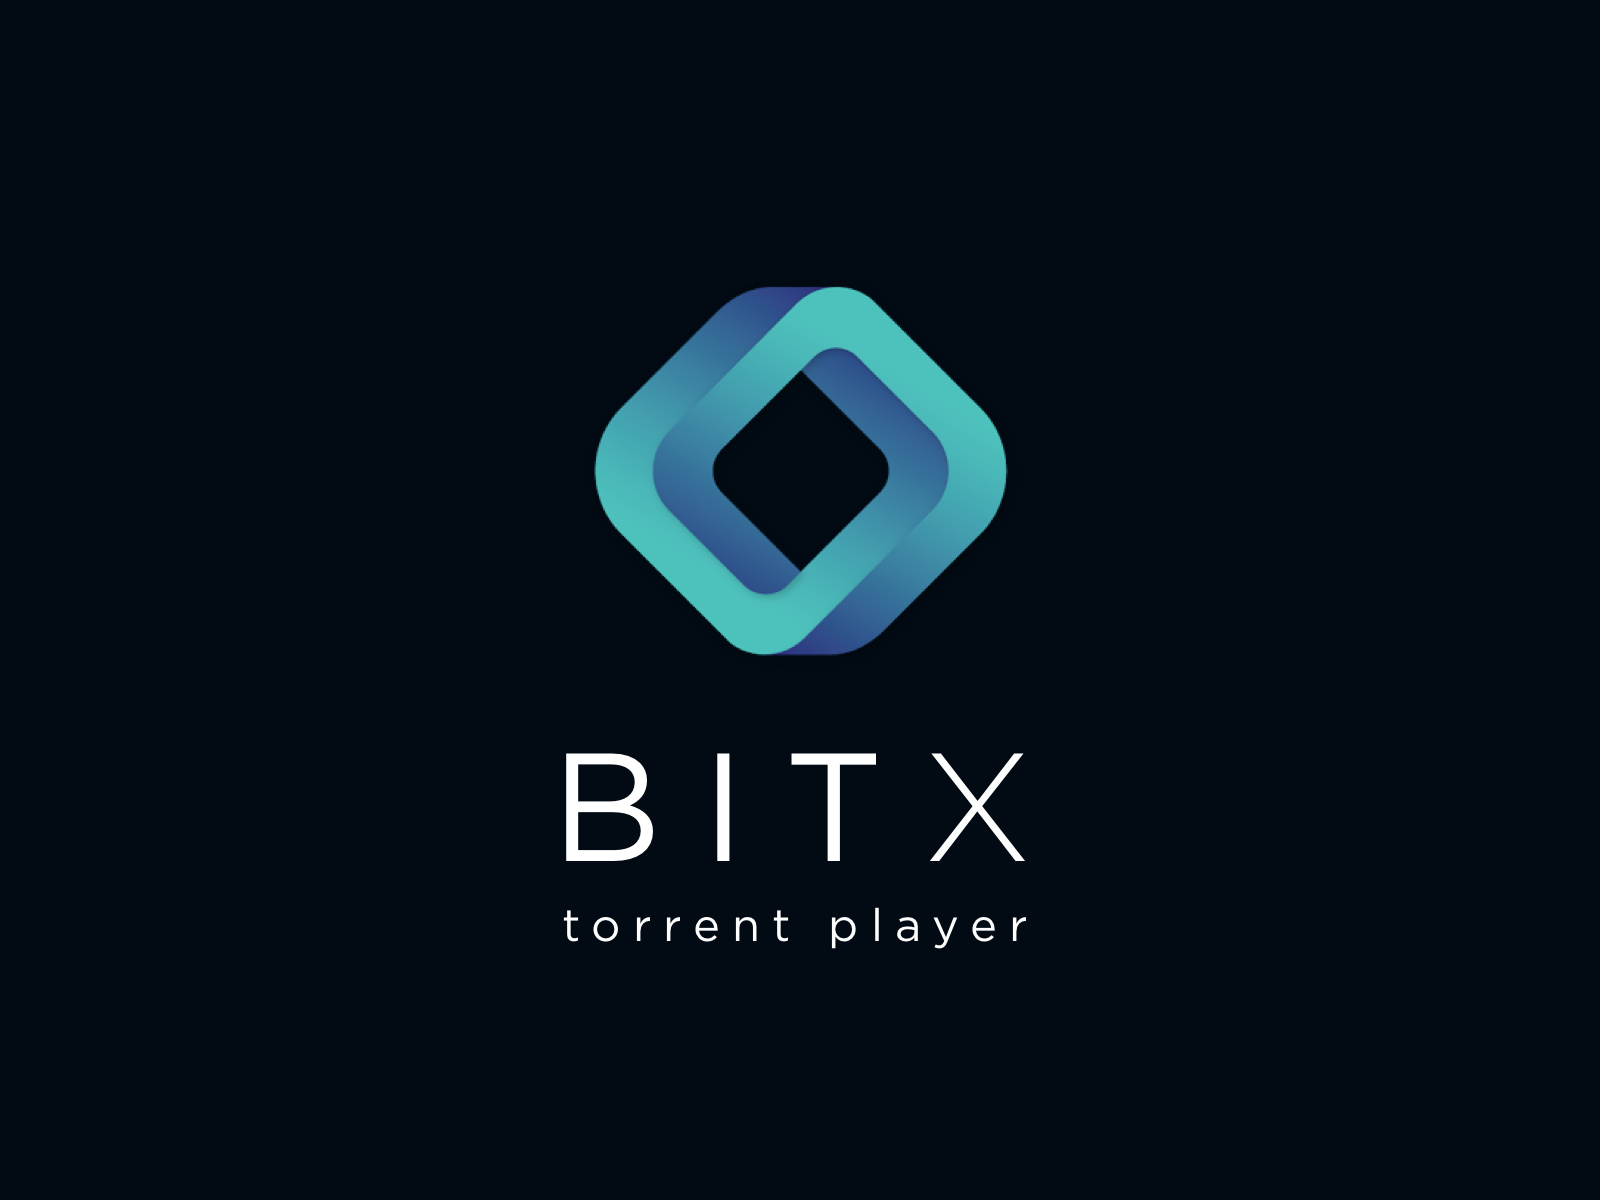 Pemain Video BitX Torrent